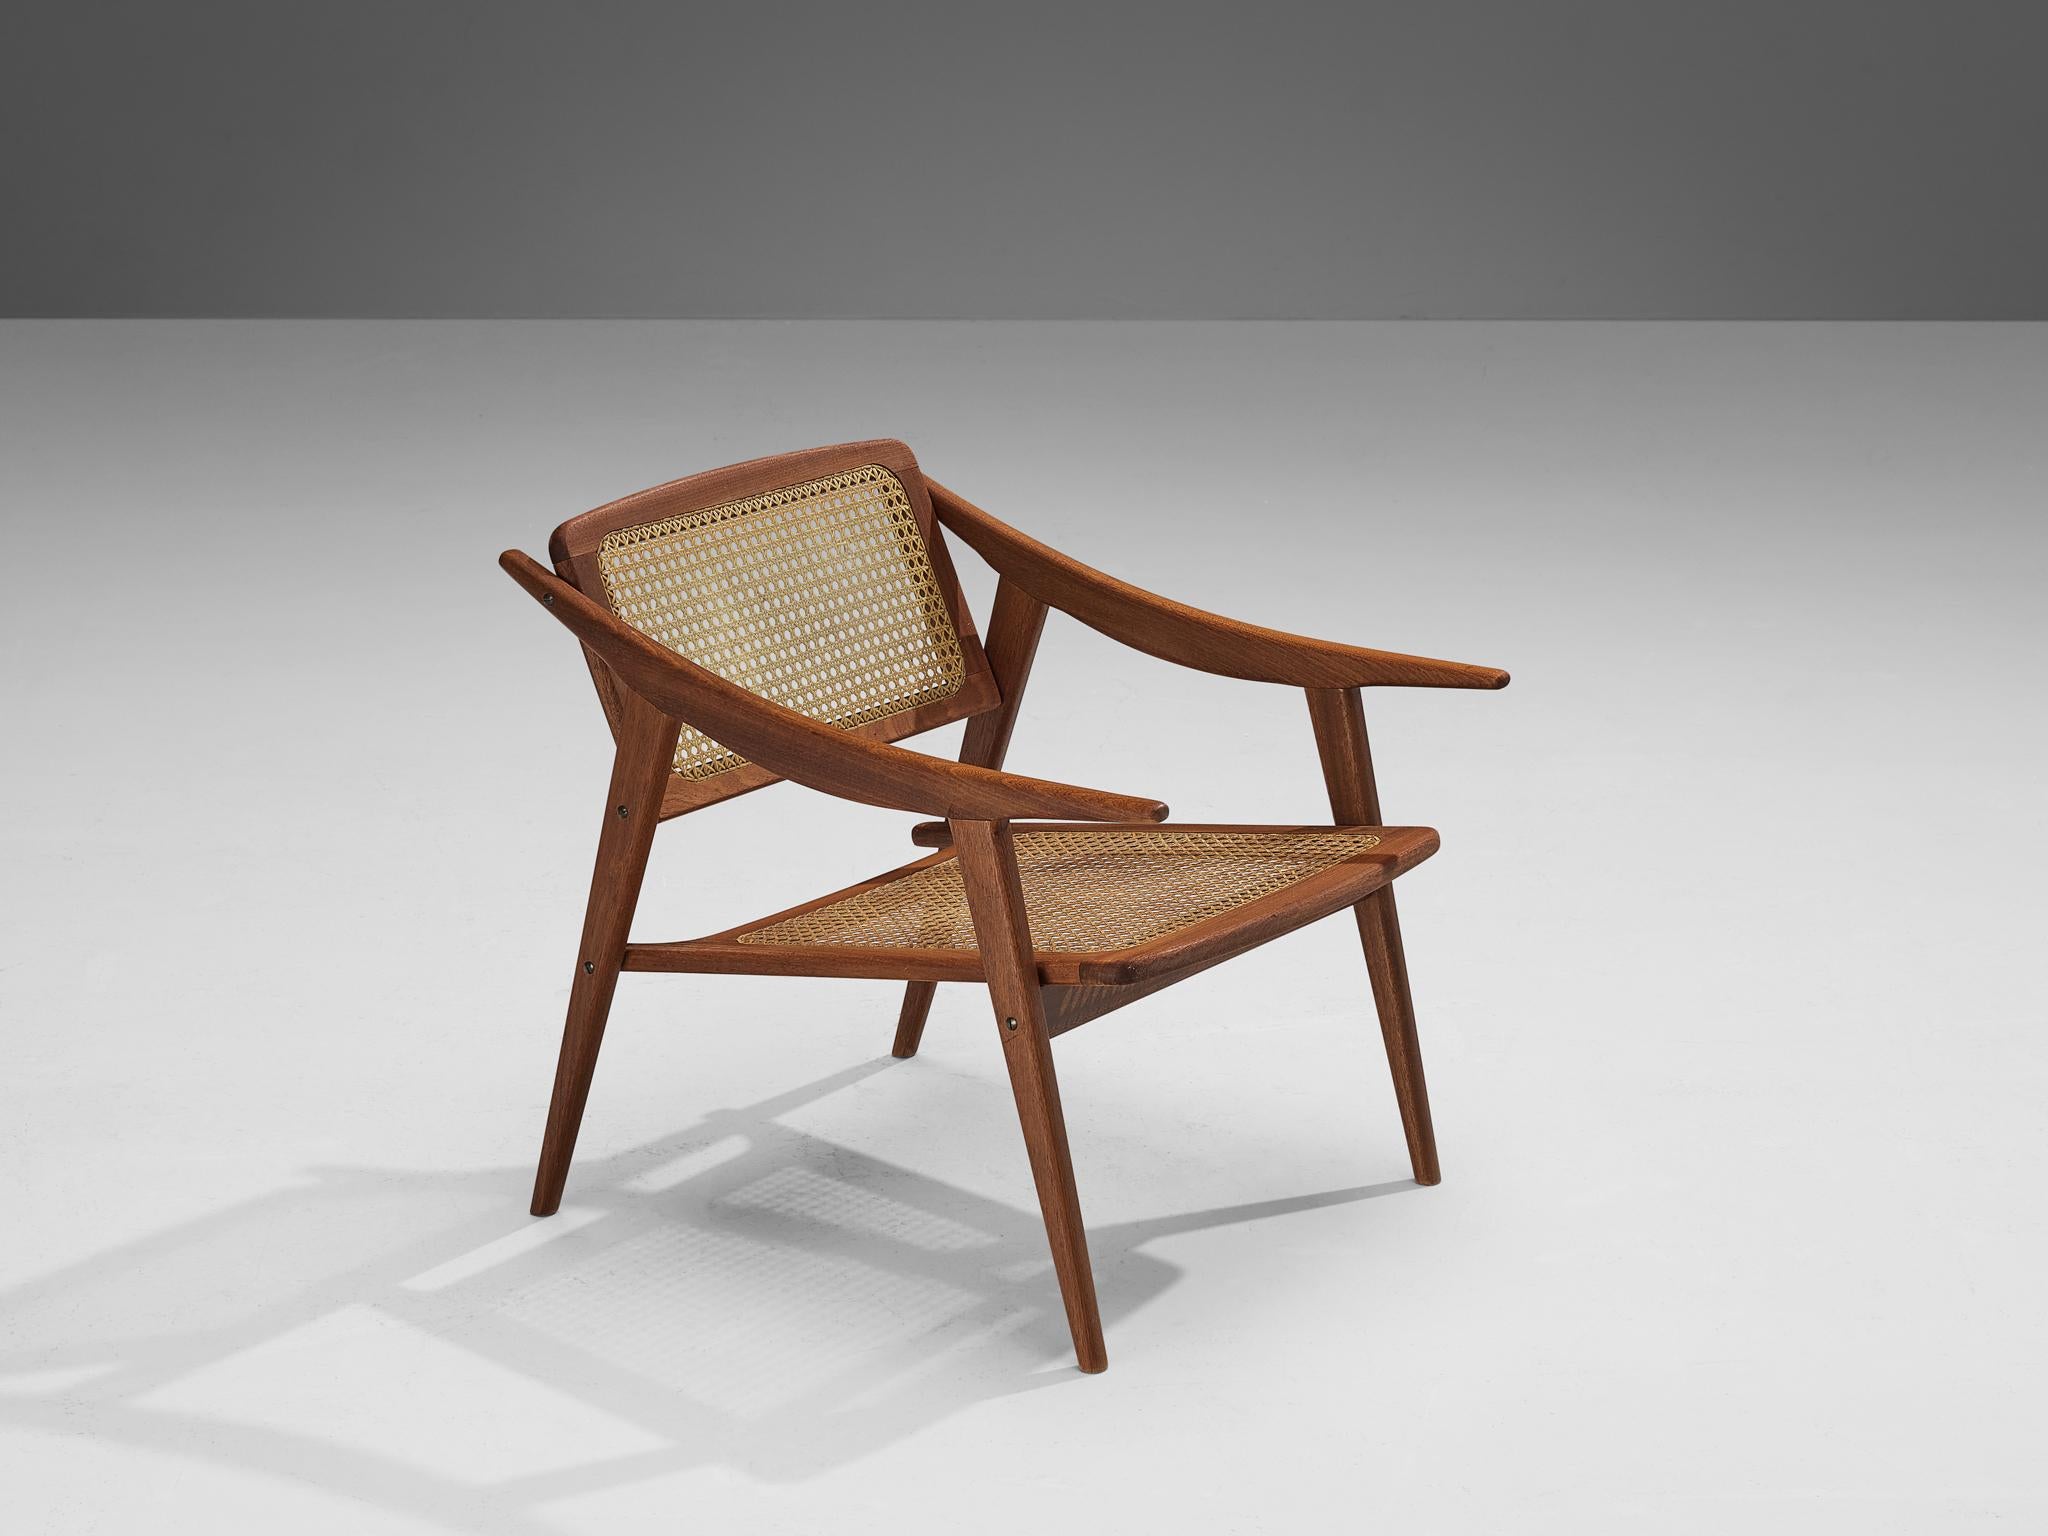 Michel Ducaroy pour SNA Roset, fauteuil, teck, cannage, France, années 1950

Dans les années 1950, le designer français Michel Ducaroy a conçu cette élégante chaise longue dans le cadre de sa collection pour sa propre société de meubles, SNA Roset.